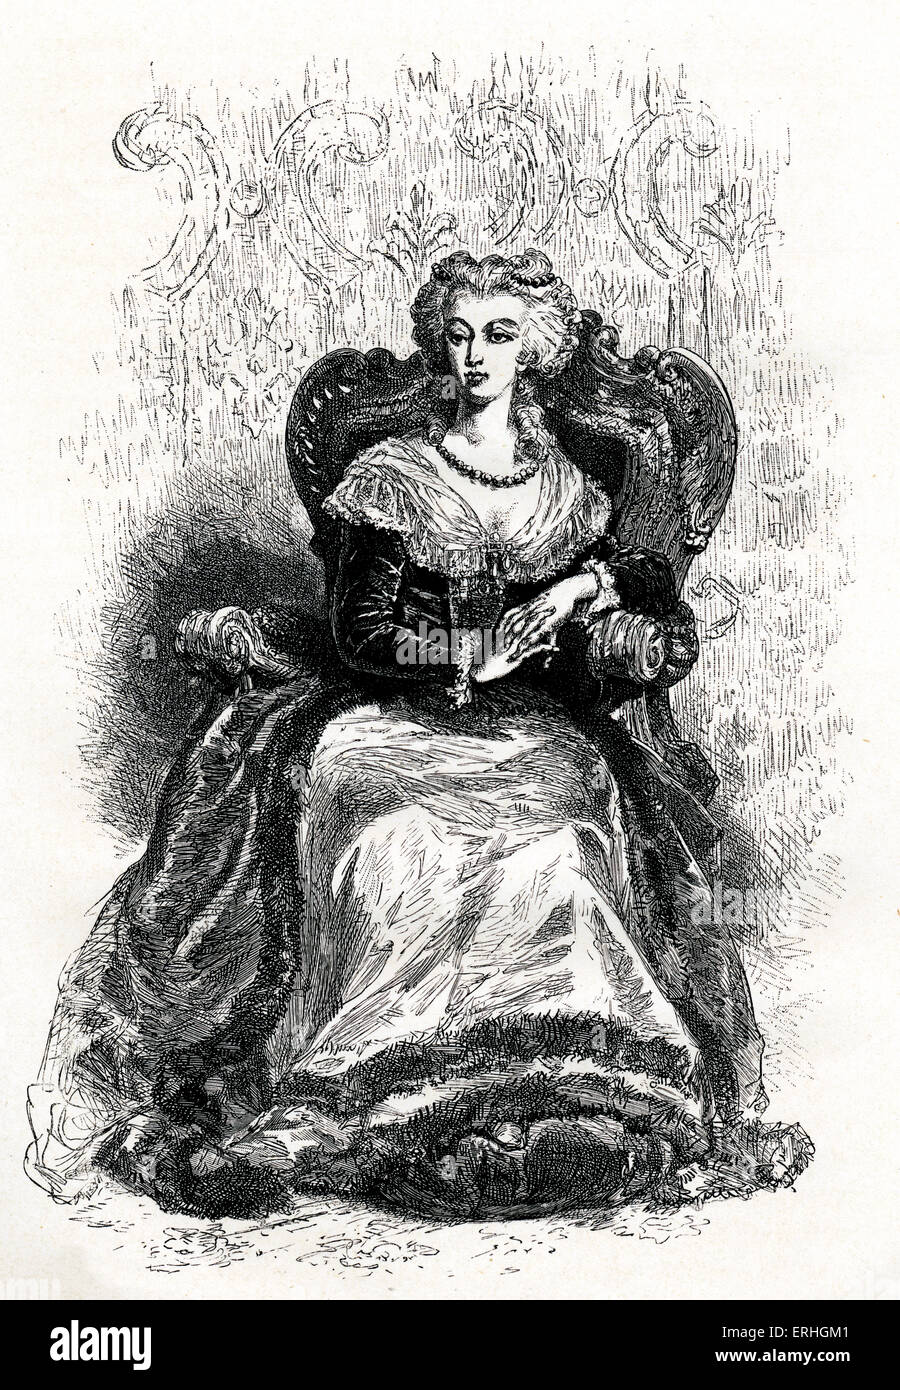 Marie Antoinette - portrait de la reine française. 2 novembre 1755 - 16 octobre 1793. Guillotiné pendant la Révolution française. Banque D'Images